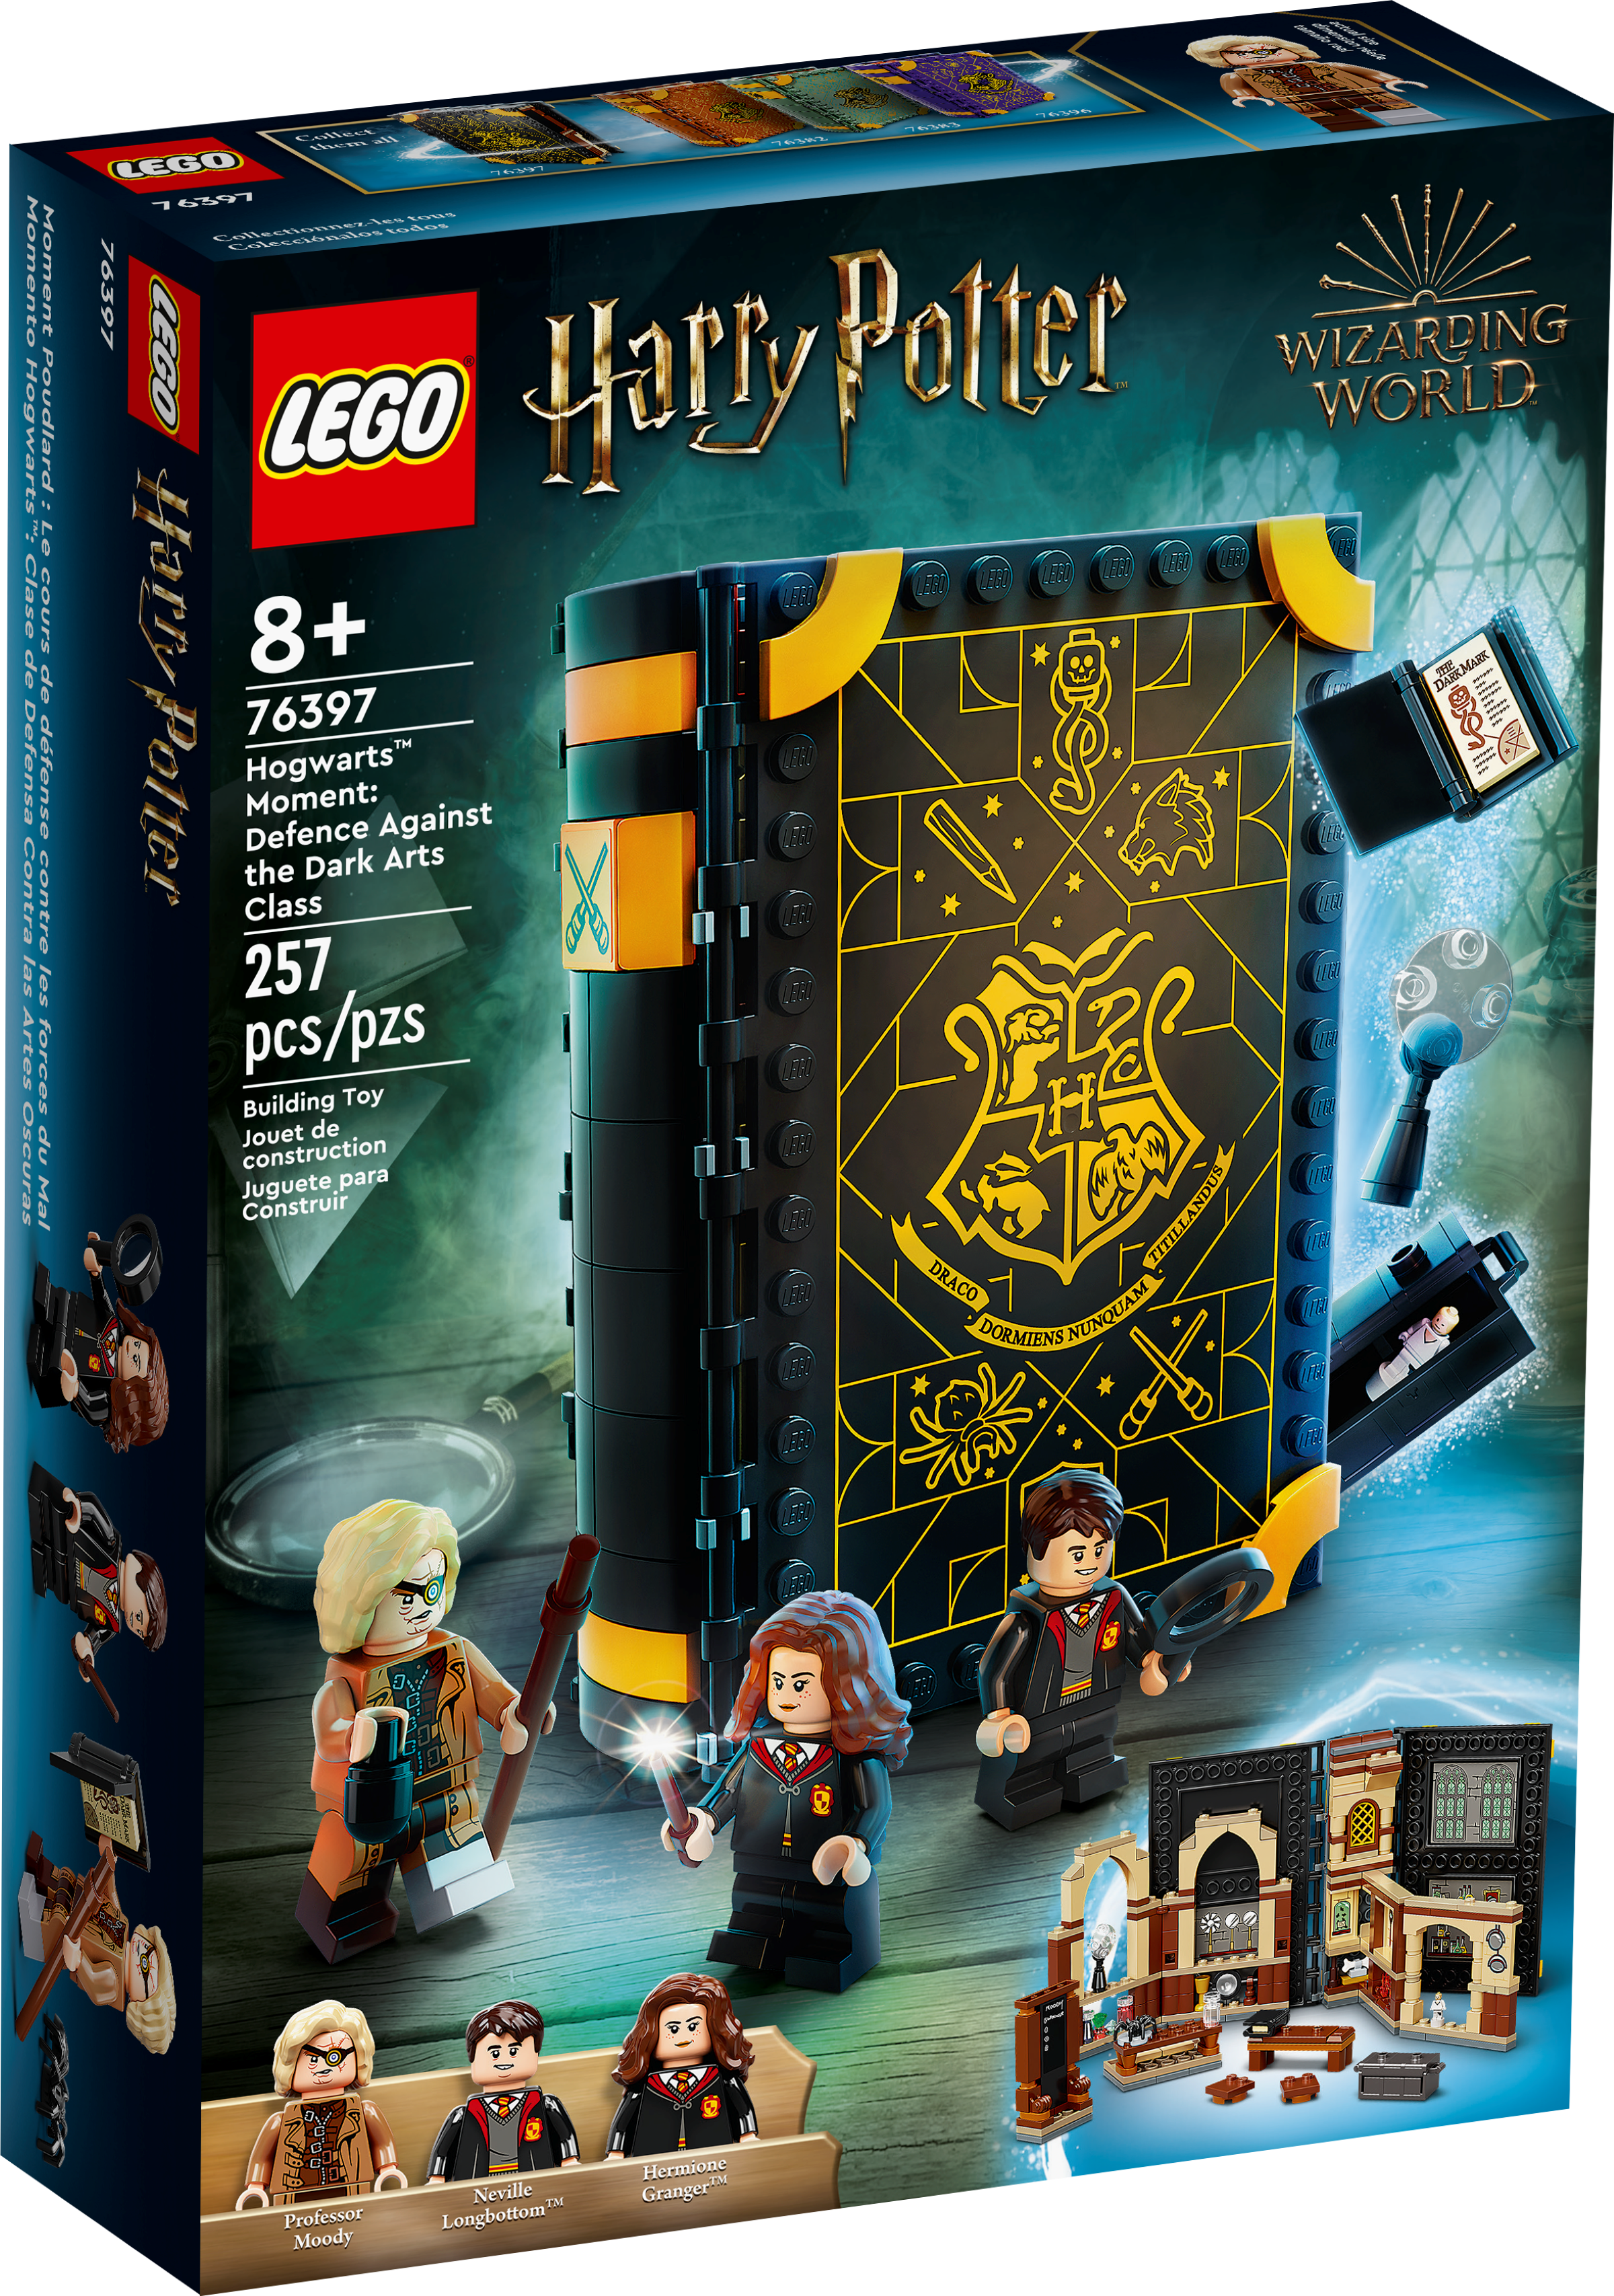 Fãs de Harry Potter: a LEGO lançou um set exclusivo em homenagem a Hogwarts  – NiT